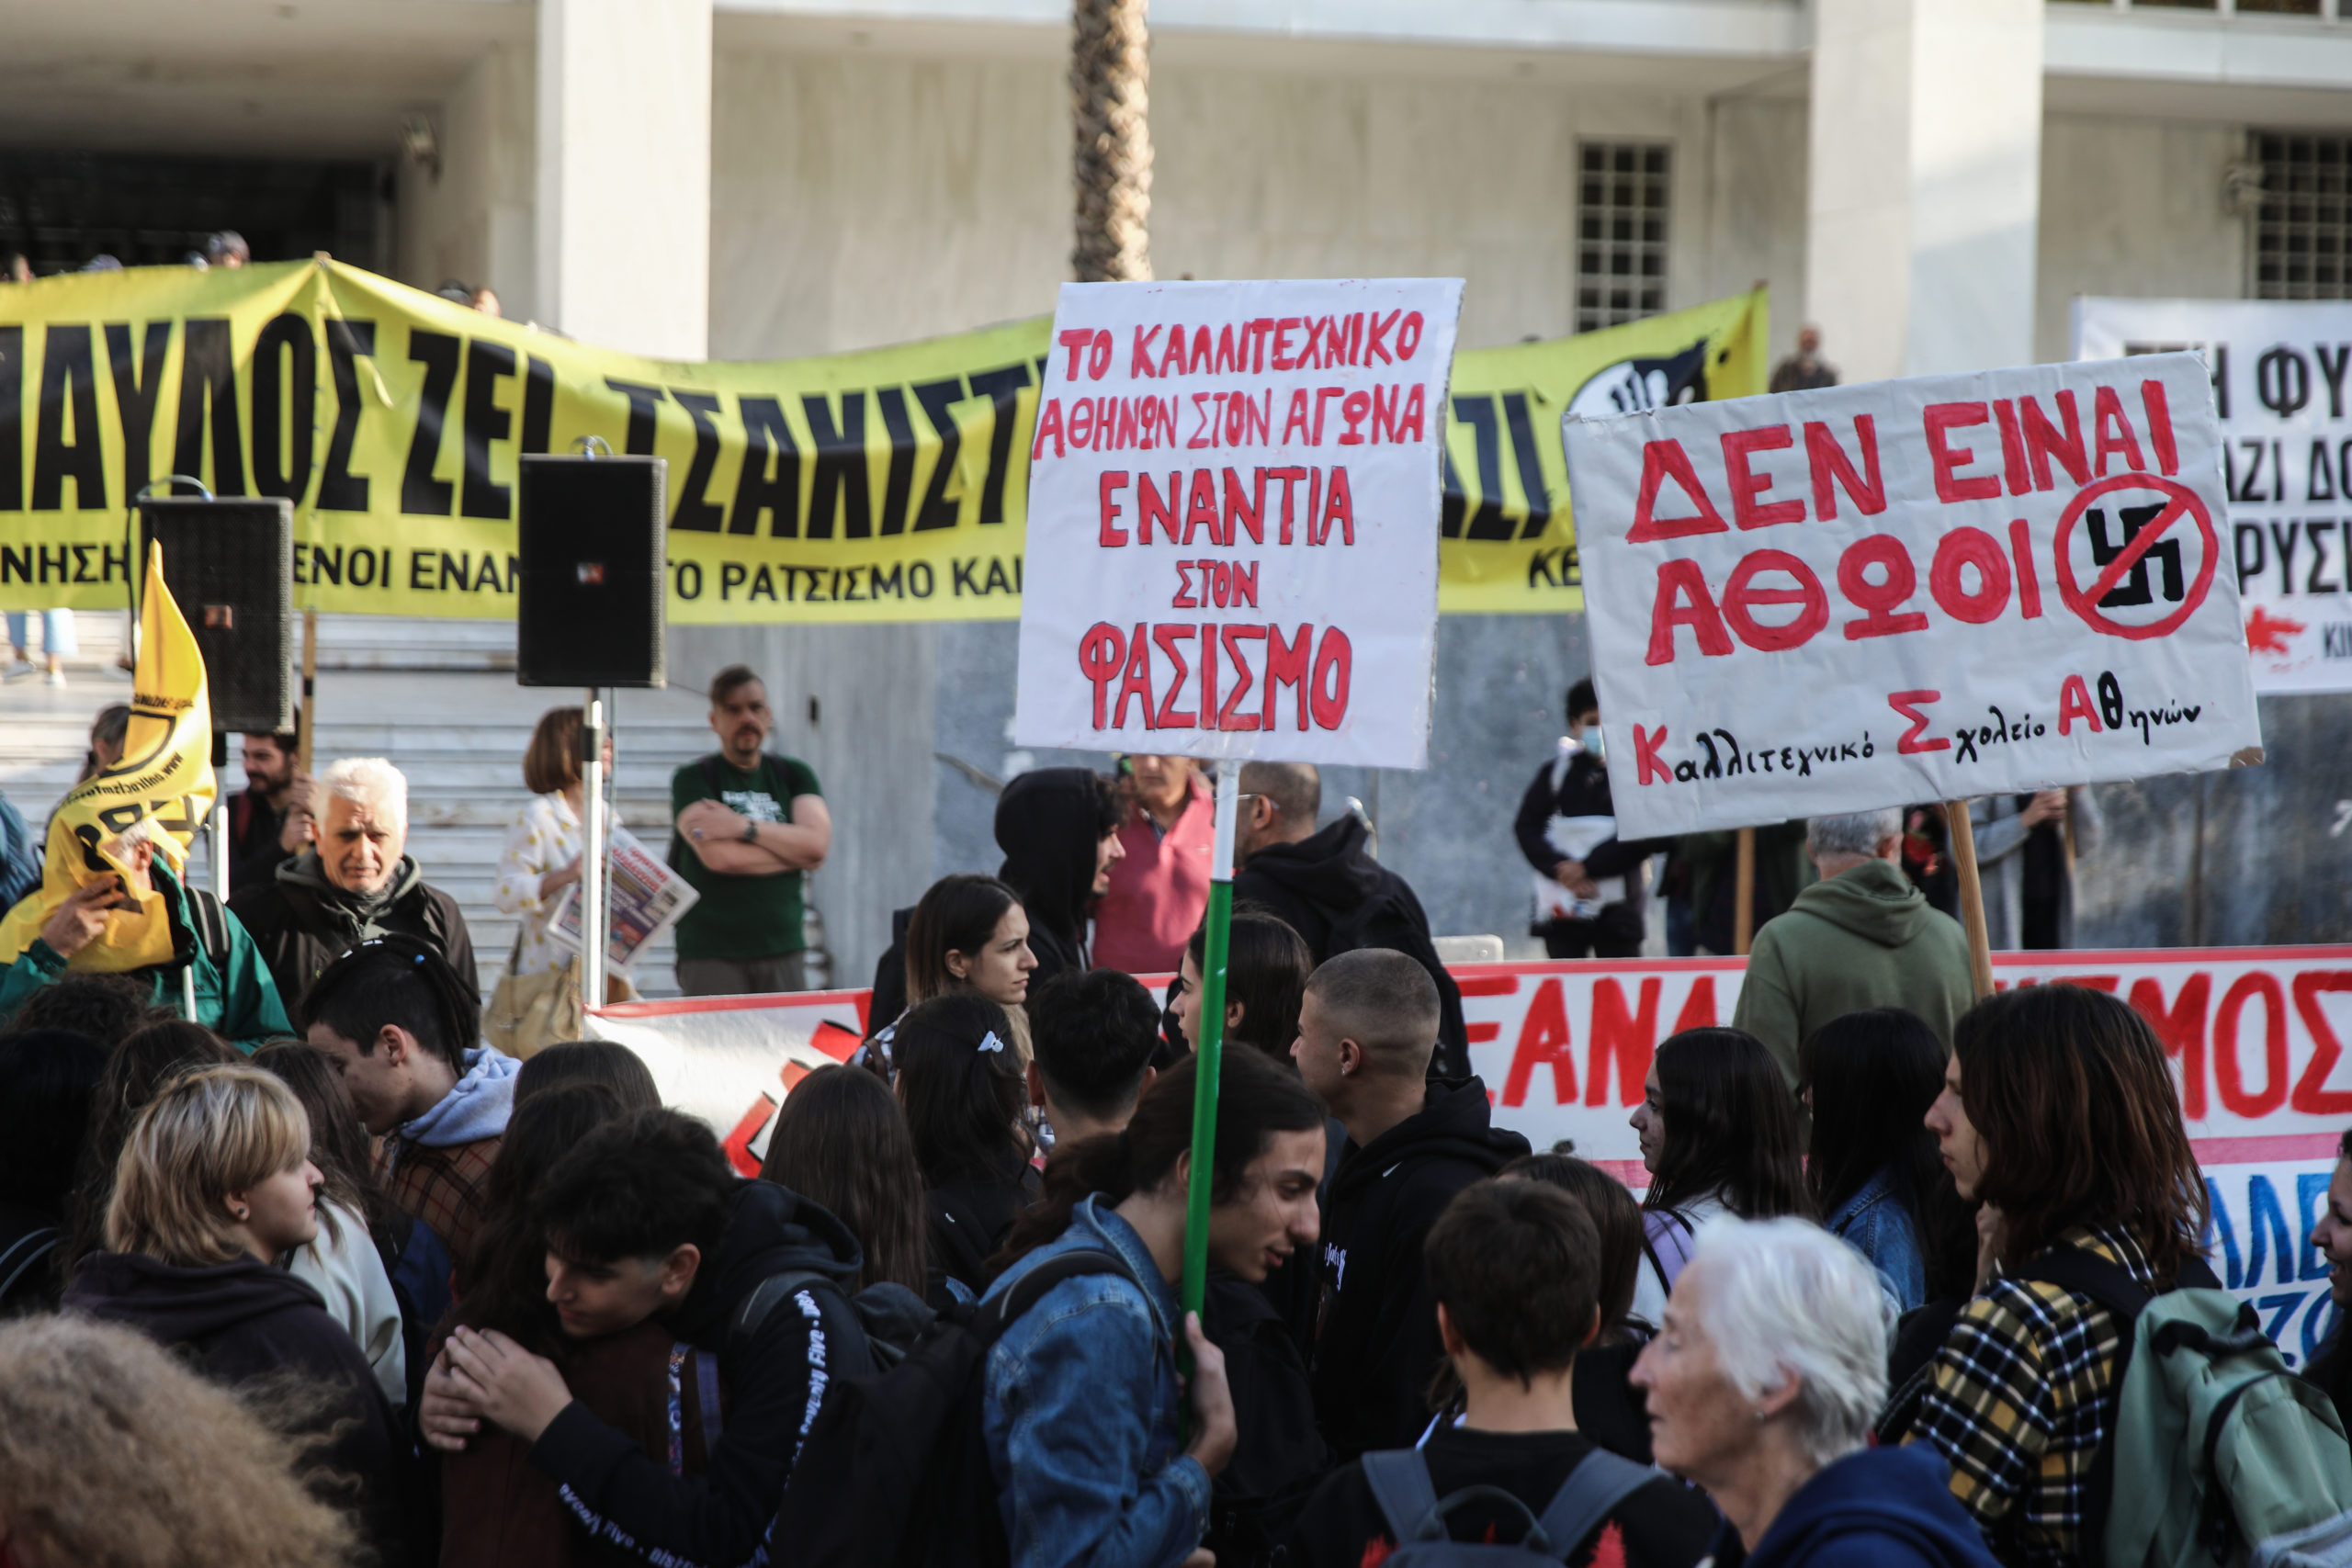 Αντιφασιστική συγκέντρωση έξω από το Εφετείο Αθηνών για τη δίκη της Χρυσής Αυγής